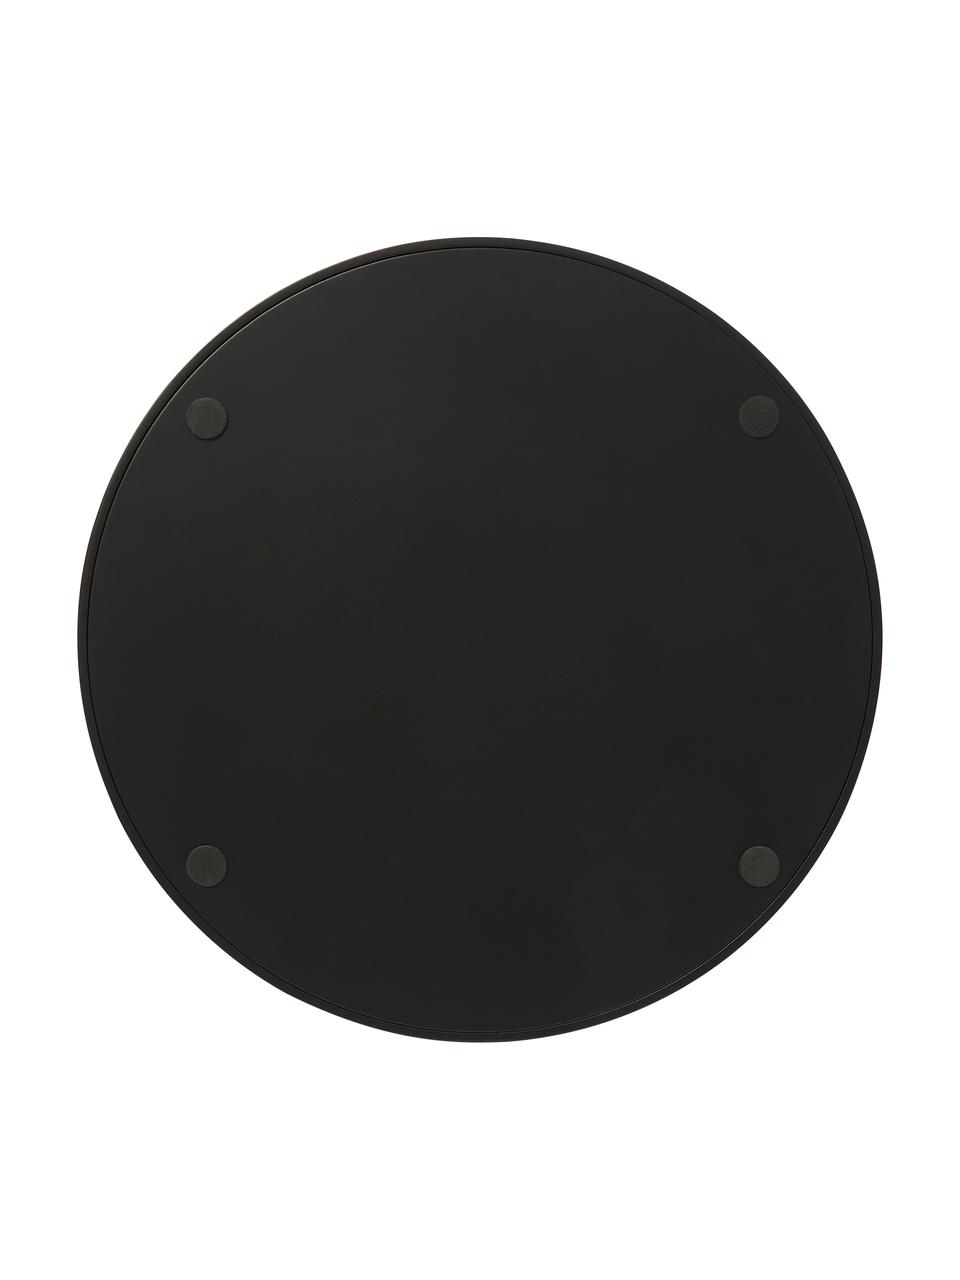 Okrągła taca dekoracyjna z plecionką wiedeńską Carina, Czarny, Ø 30 x W 3 cm